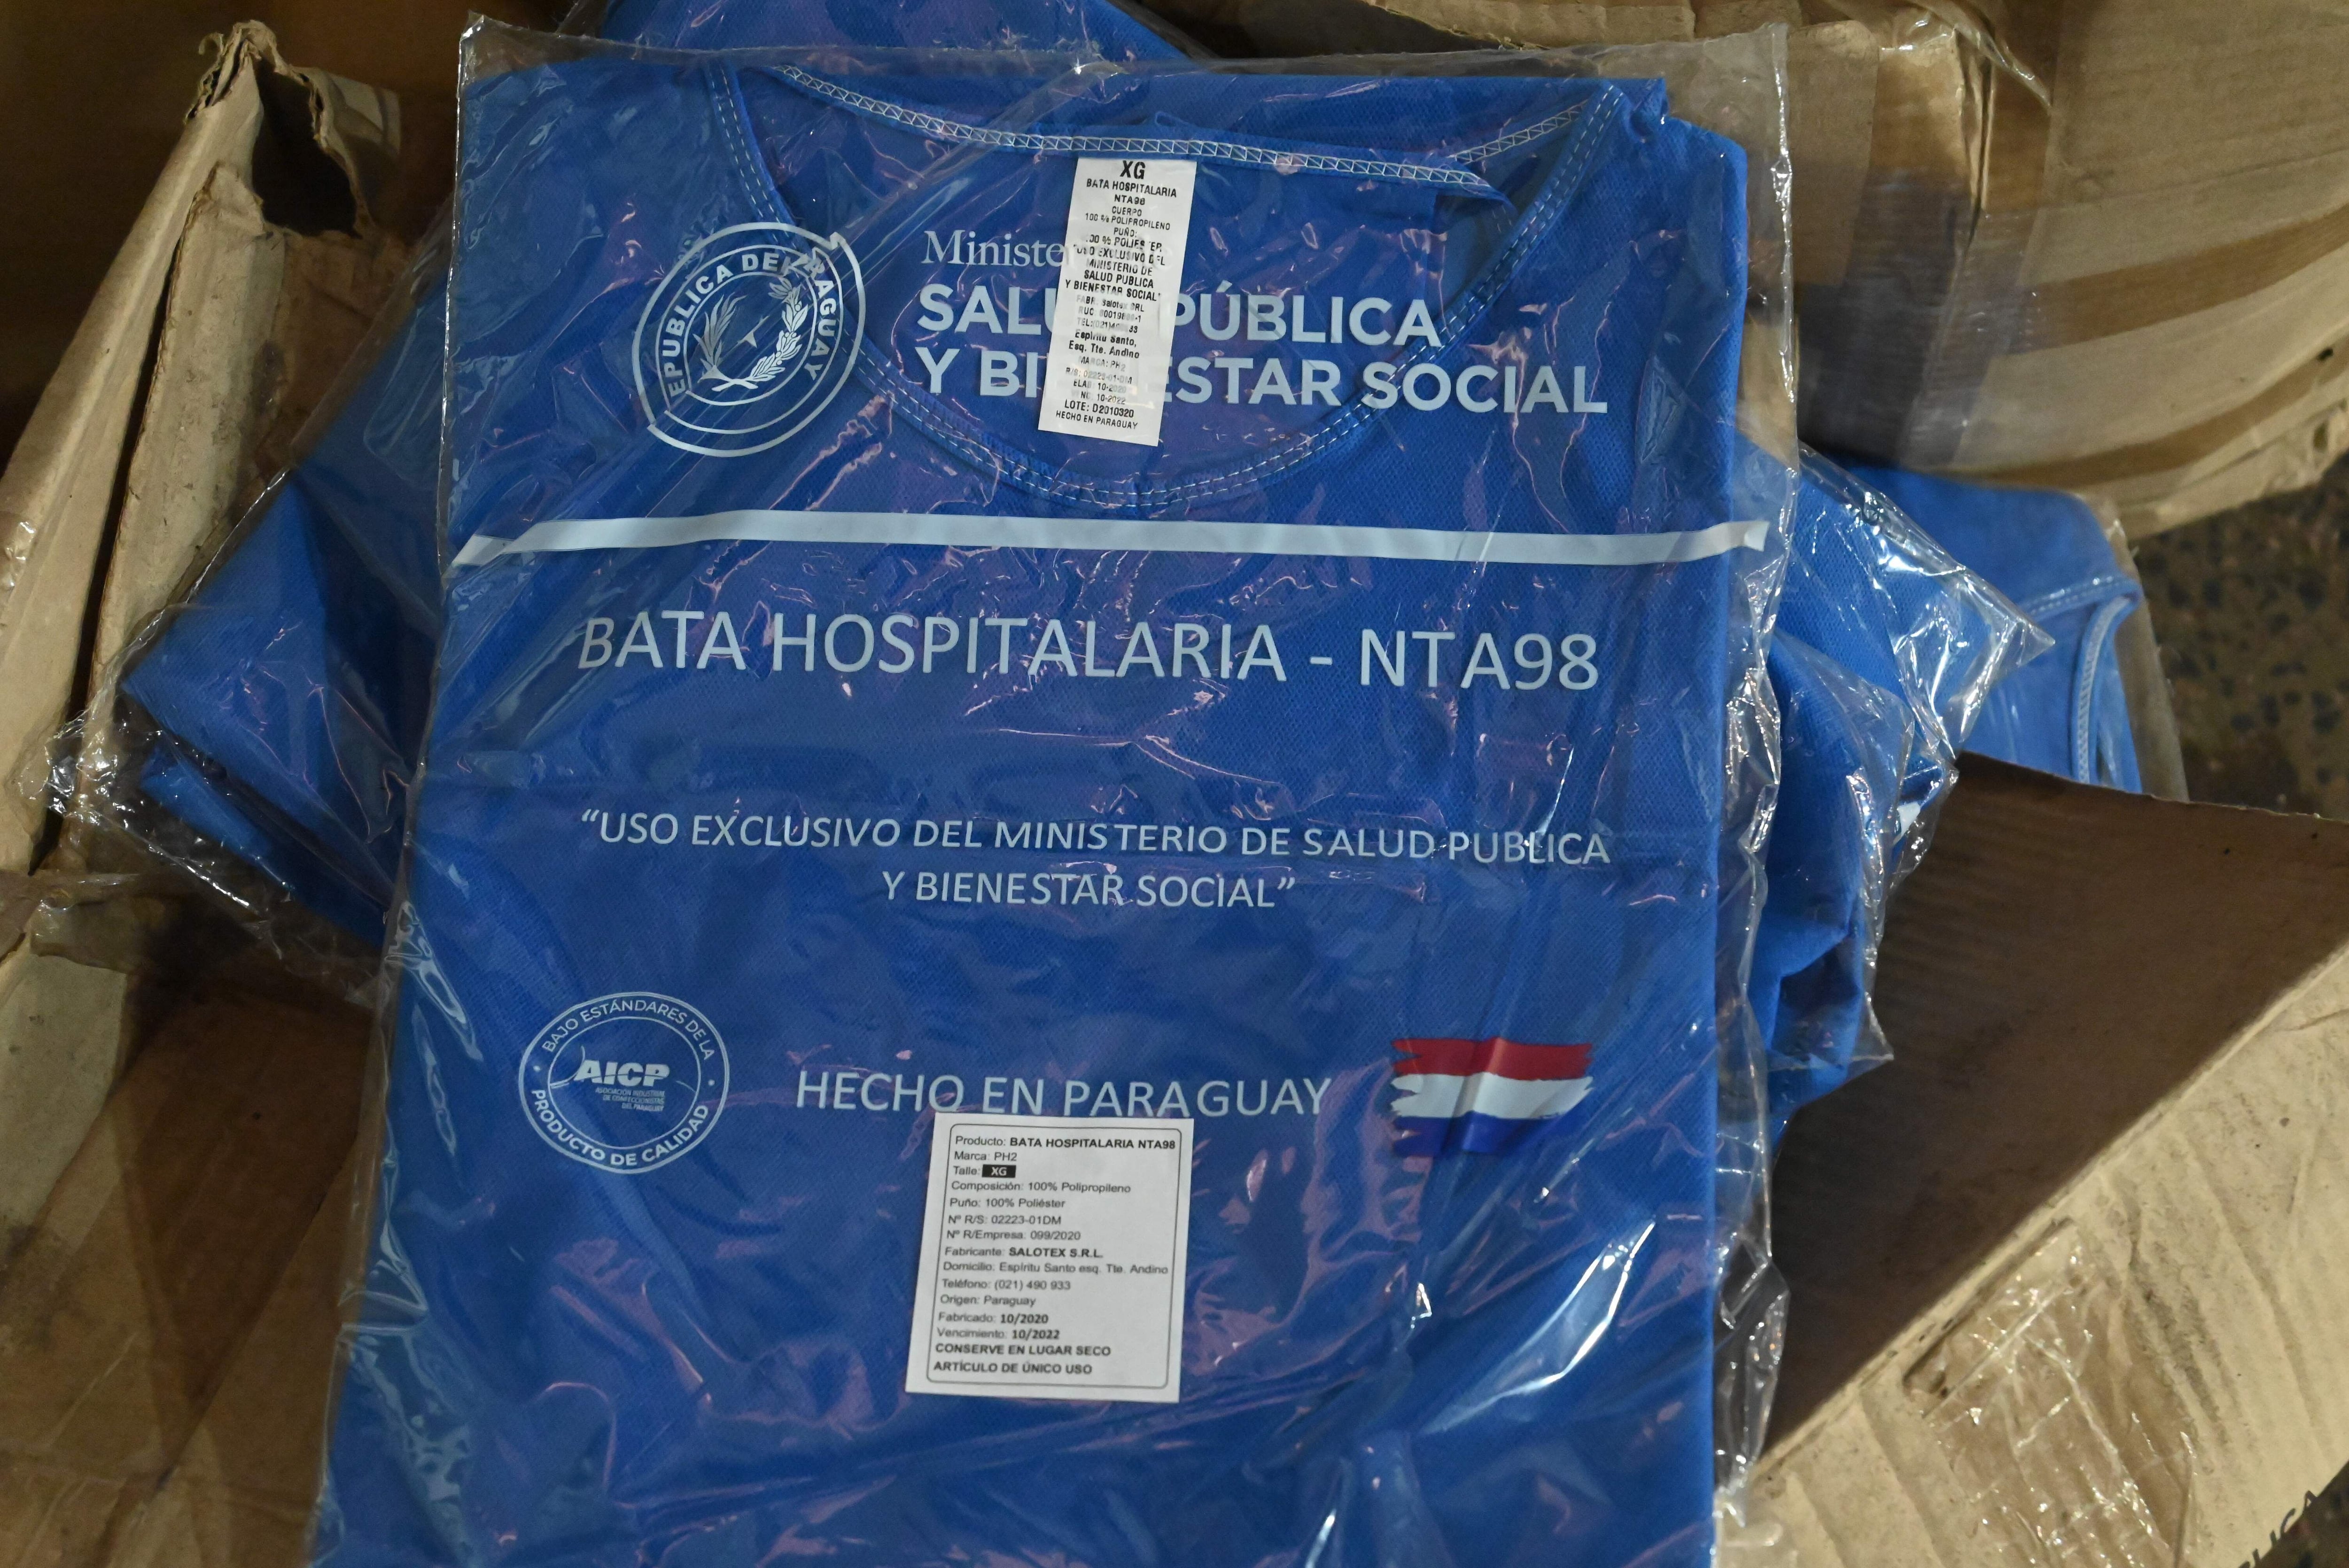 Batas donadas por el Ministerio de Salud, abandonadas por la Municipalidad de Asunción, que a su vez compró el mismo producto.